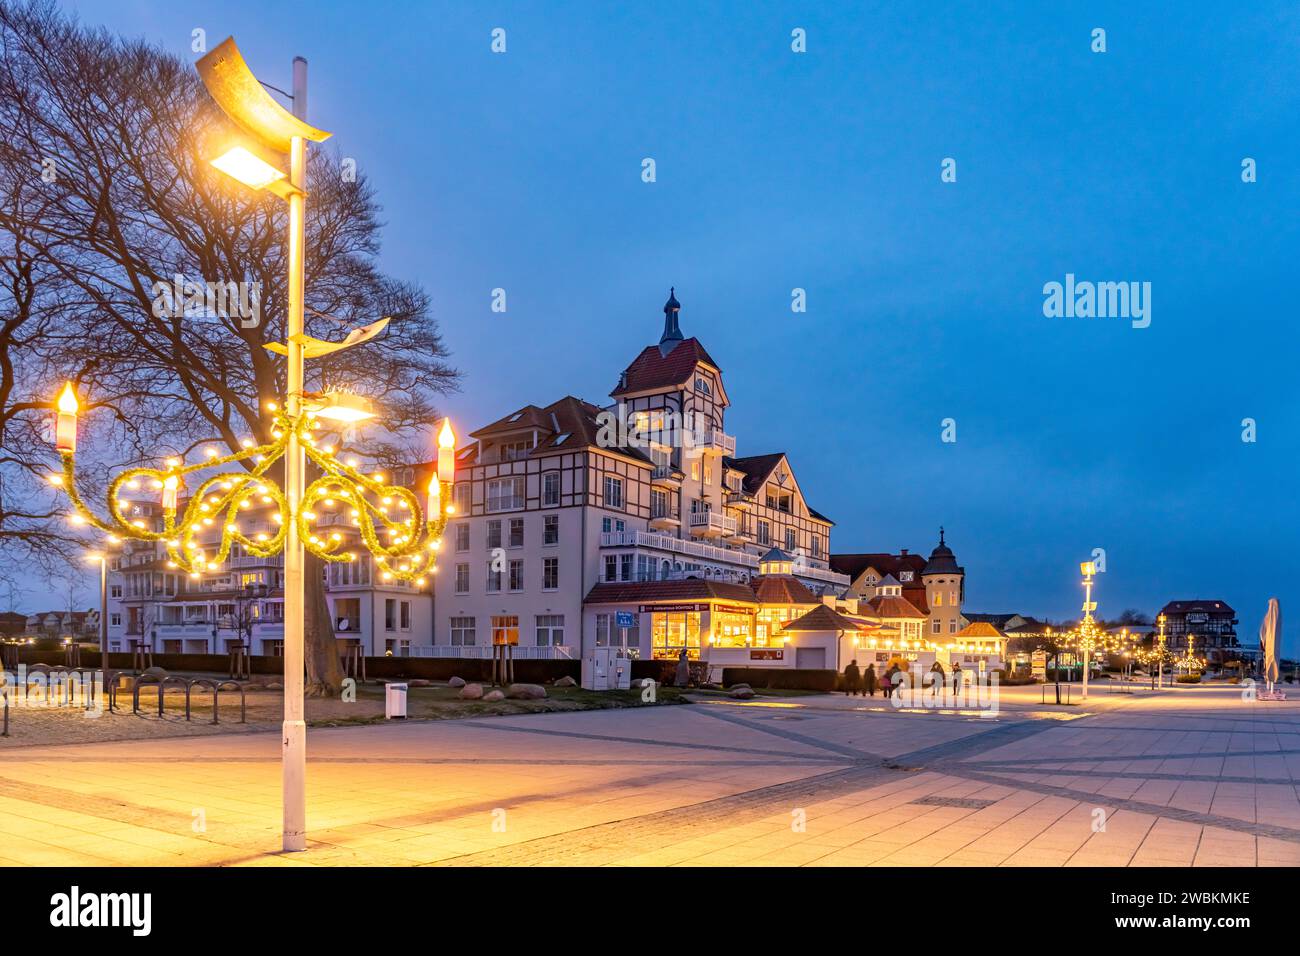 Ostsee Promenade am Baltic Platz mit Weihnachtsbeleuchtung im Ostseebad Kühlungsborn in der Abenddämmerung, Mecklenburg-Vorpommern, Deutschland |  Bal Stock Photo